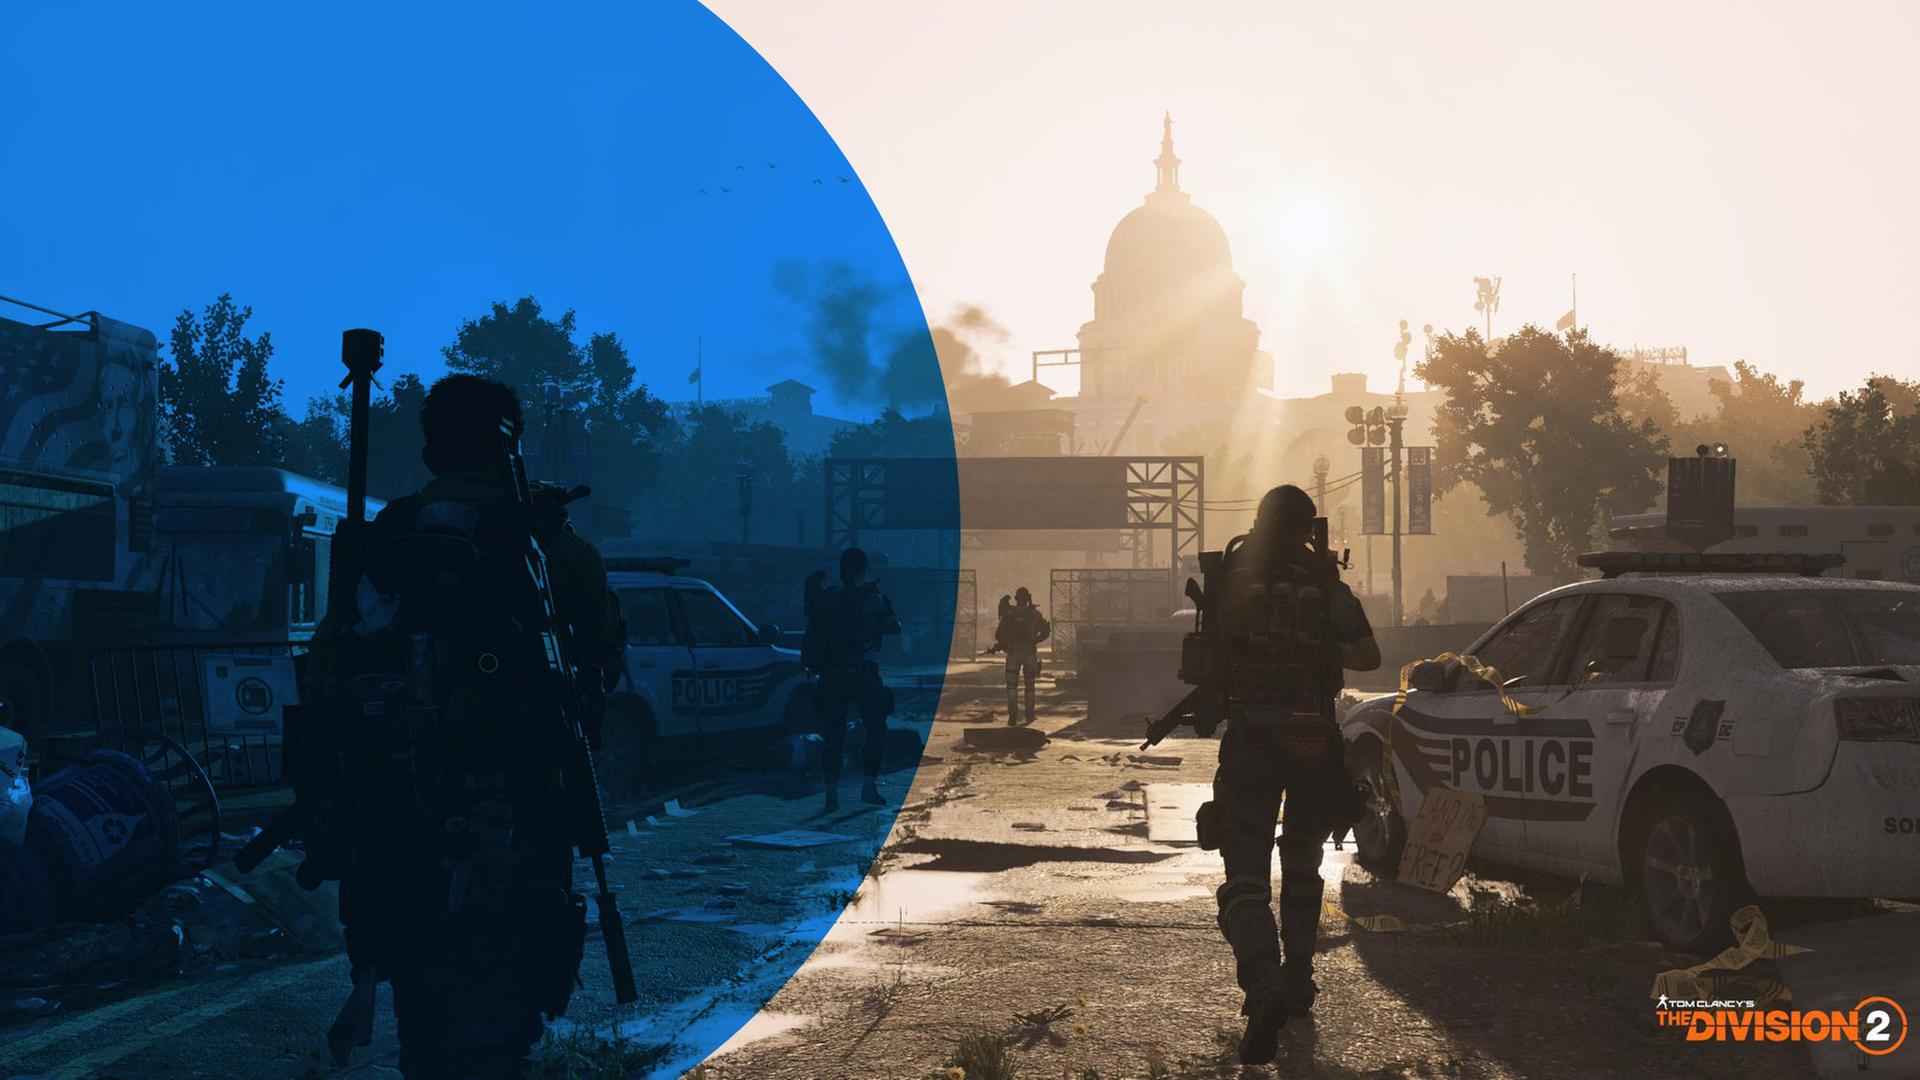 Ein Screenshot aus dem Ubisoft-Titel "Tom Clancy's The Division 2" - bewaffnete Kämpfer rücken durch ein zerstörtes Washington DC in Richtung Capitol Hill vor.